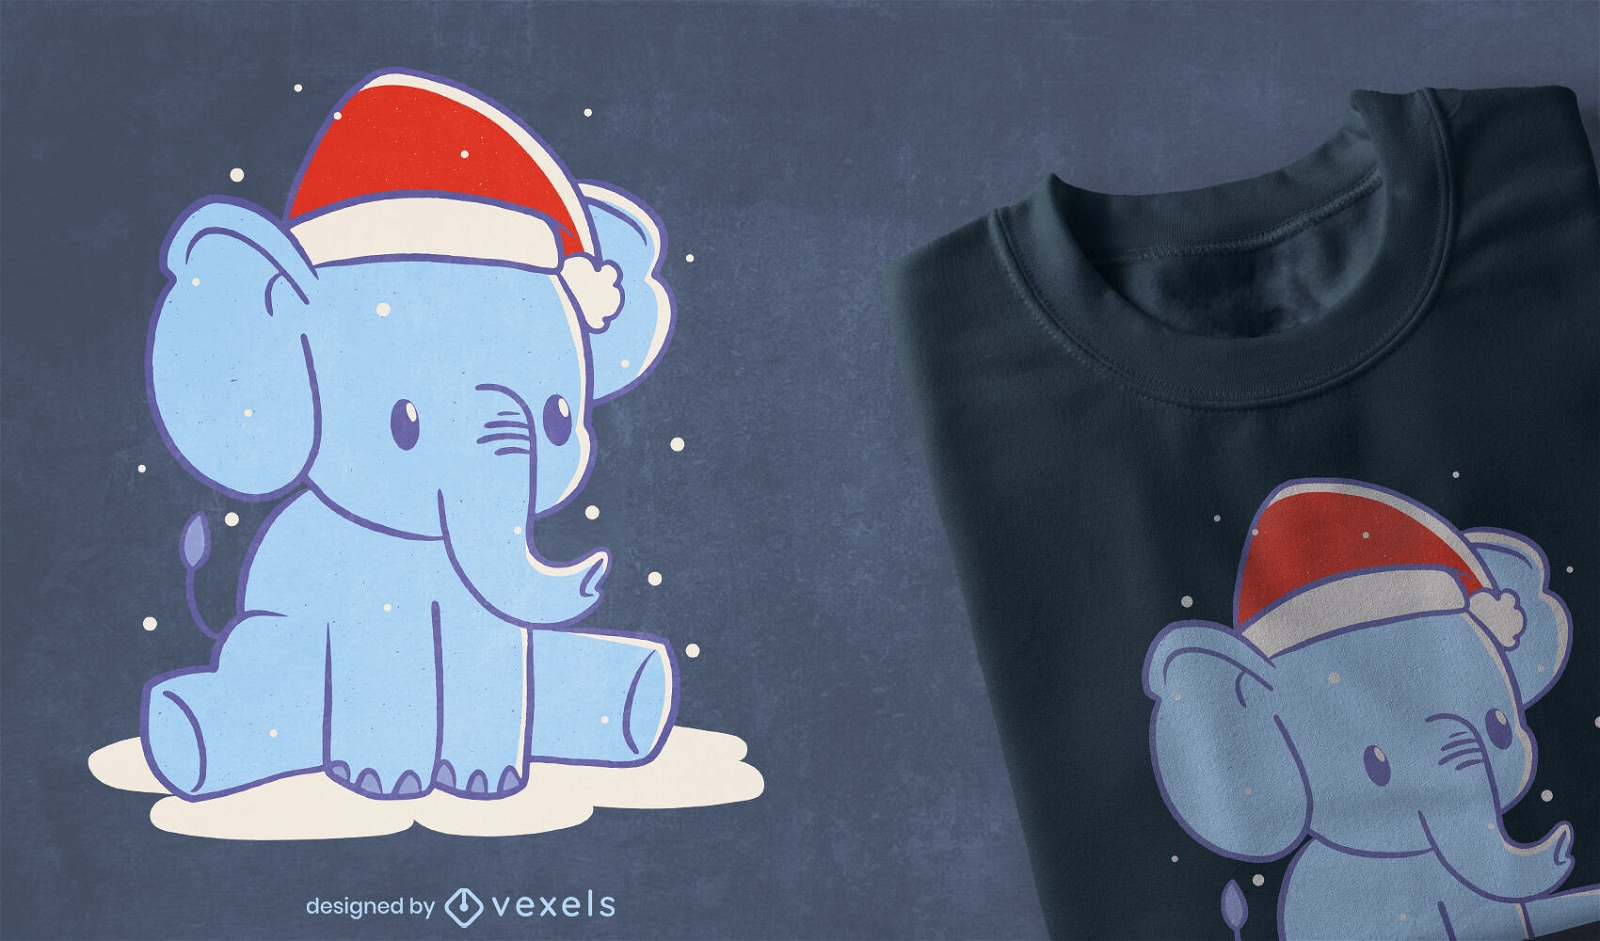 Cute Christmas elephant t-shirt design